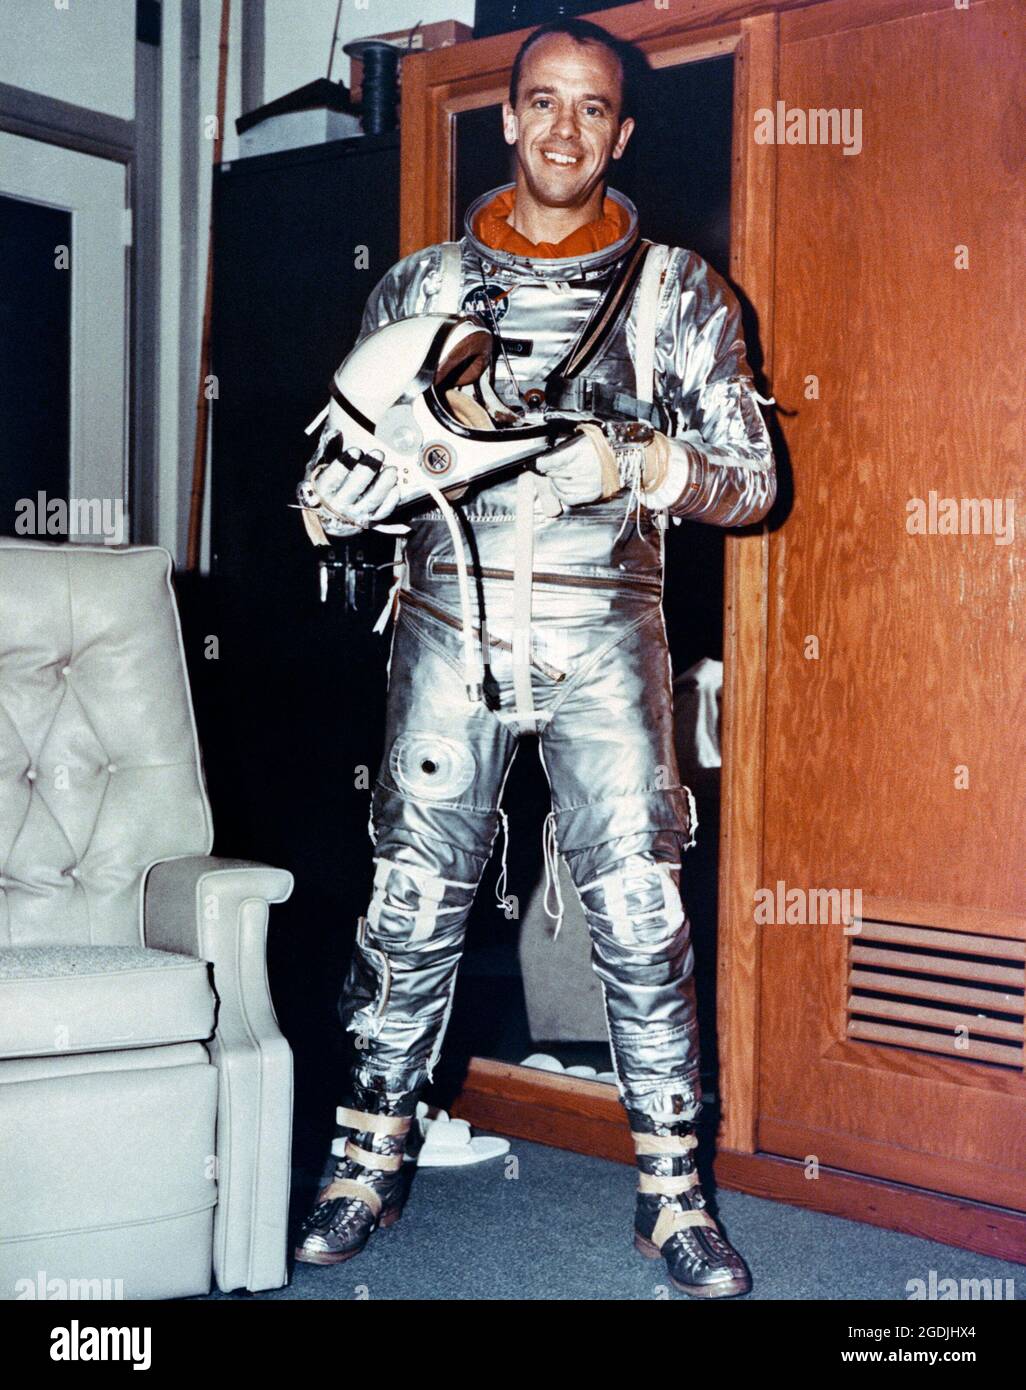 Astronaut Alan Shepard, gekleidet in seinen Raumanzügen, vor seinem Start in einer Mercury-Redstone 3 (MR-3) Raumsonde von Cape Canaveral. Er war der erste Amerikaner im All, 23 Tage nach Juri Gagarin, auf der Mission Freedom 7. Stockfoto